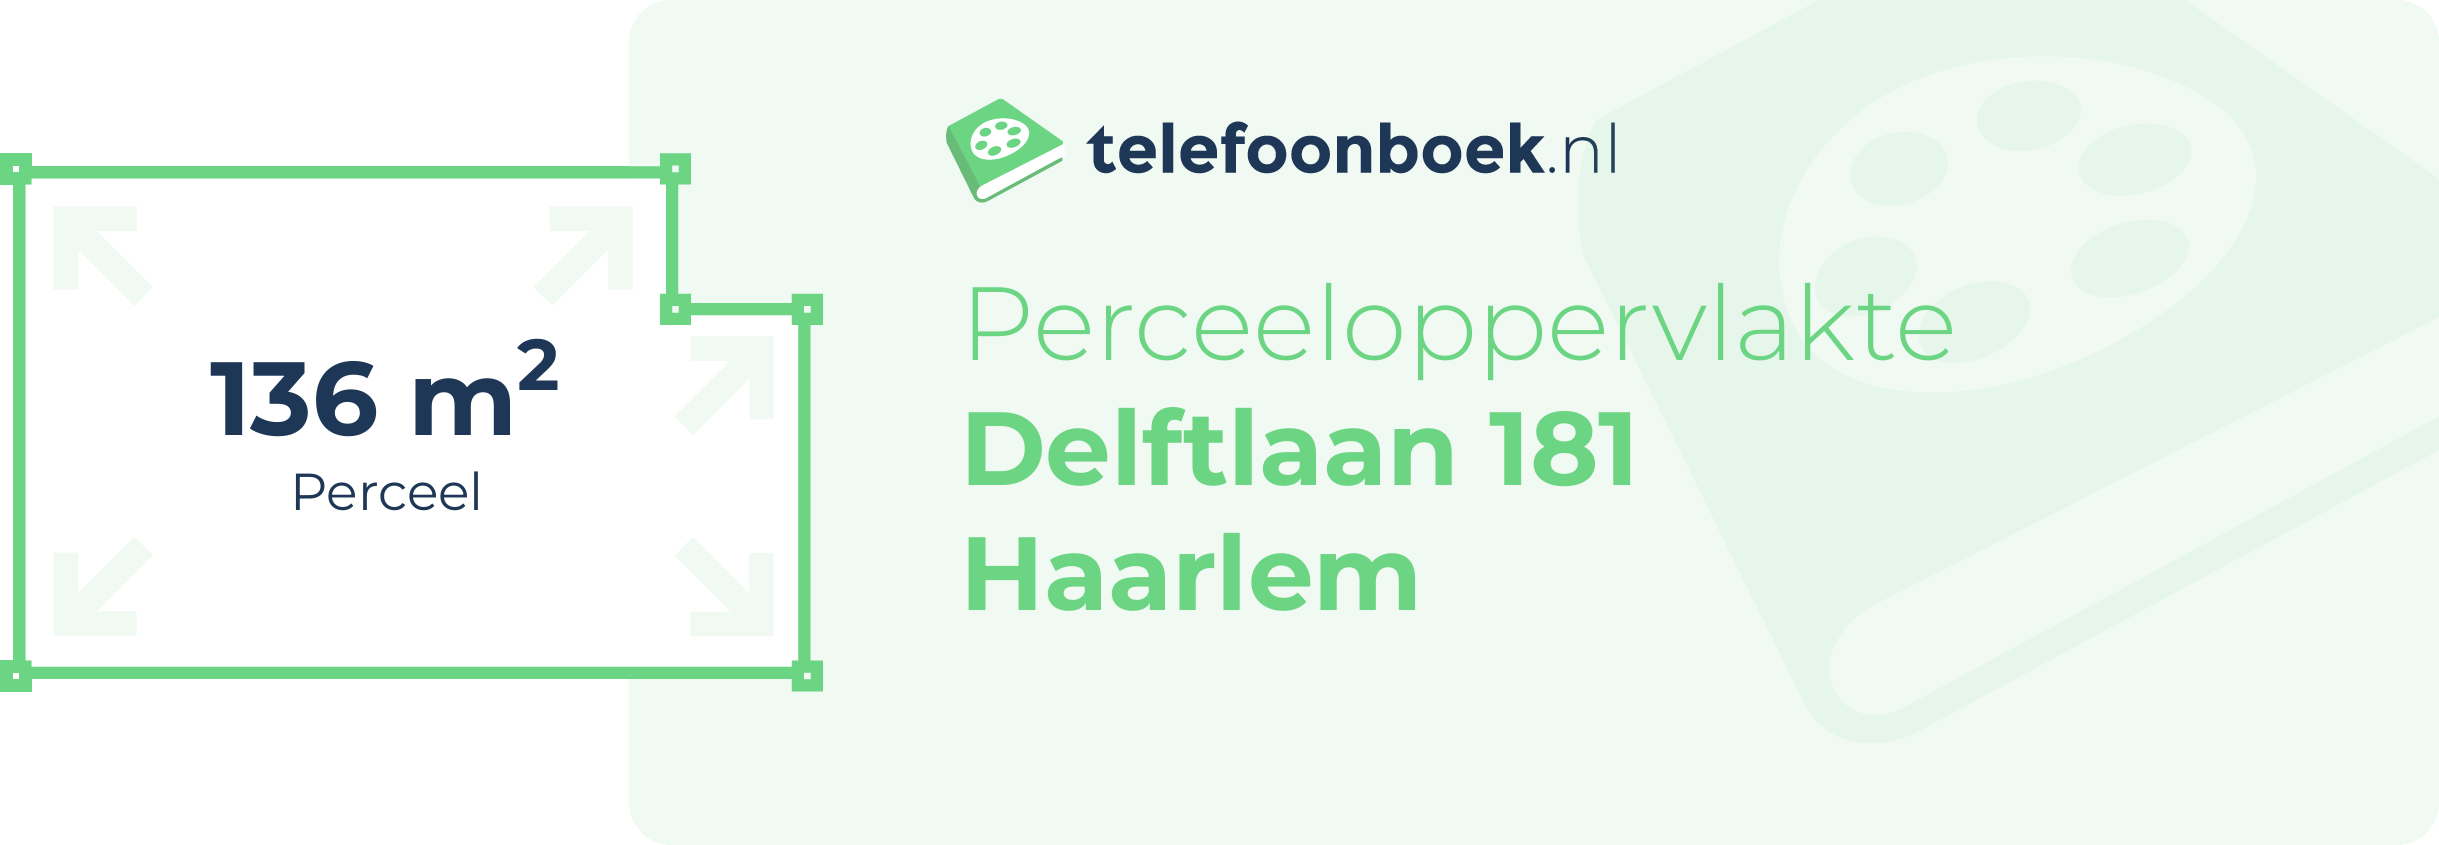 Perceeloppervlakte Delftlaan 181 Haarlem